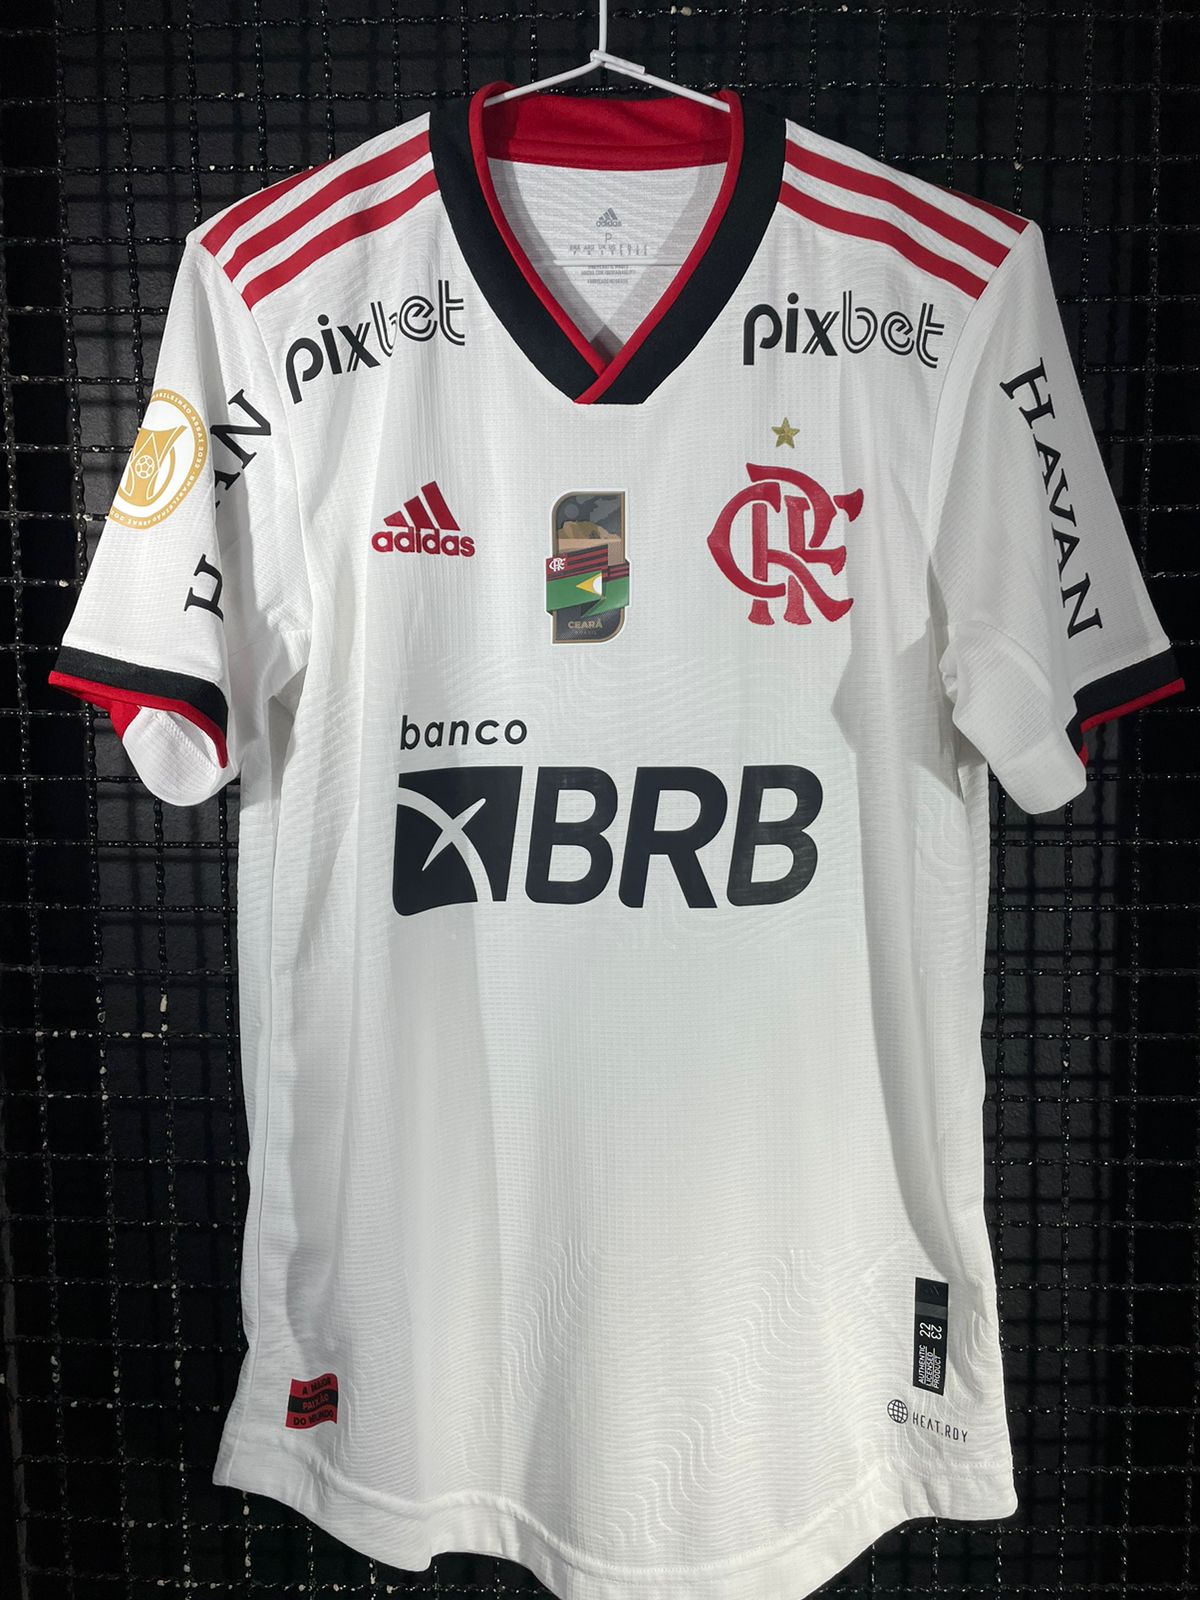 O novo uniforme do Flamengo tem um patch com a bandeira do estado de origem  dos jogadores estampado no peito. Gabriel Barbosa hoje entrou com a  bandeira do Rio de Janeiro, mesmo